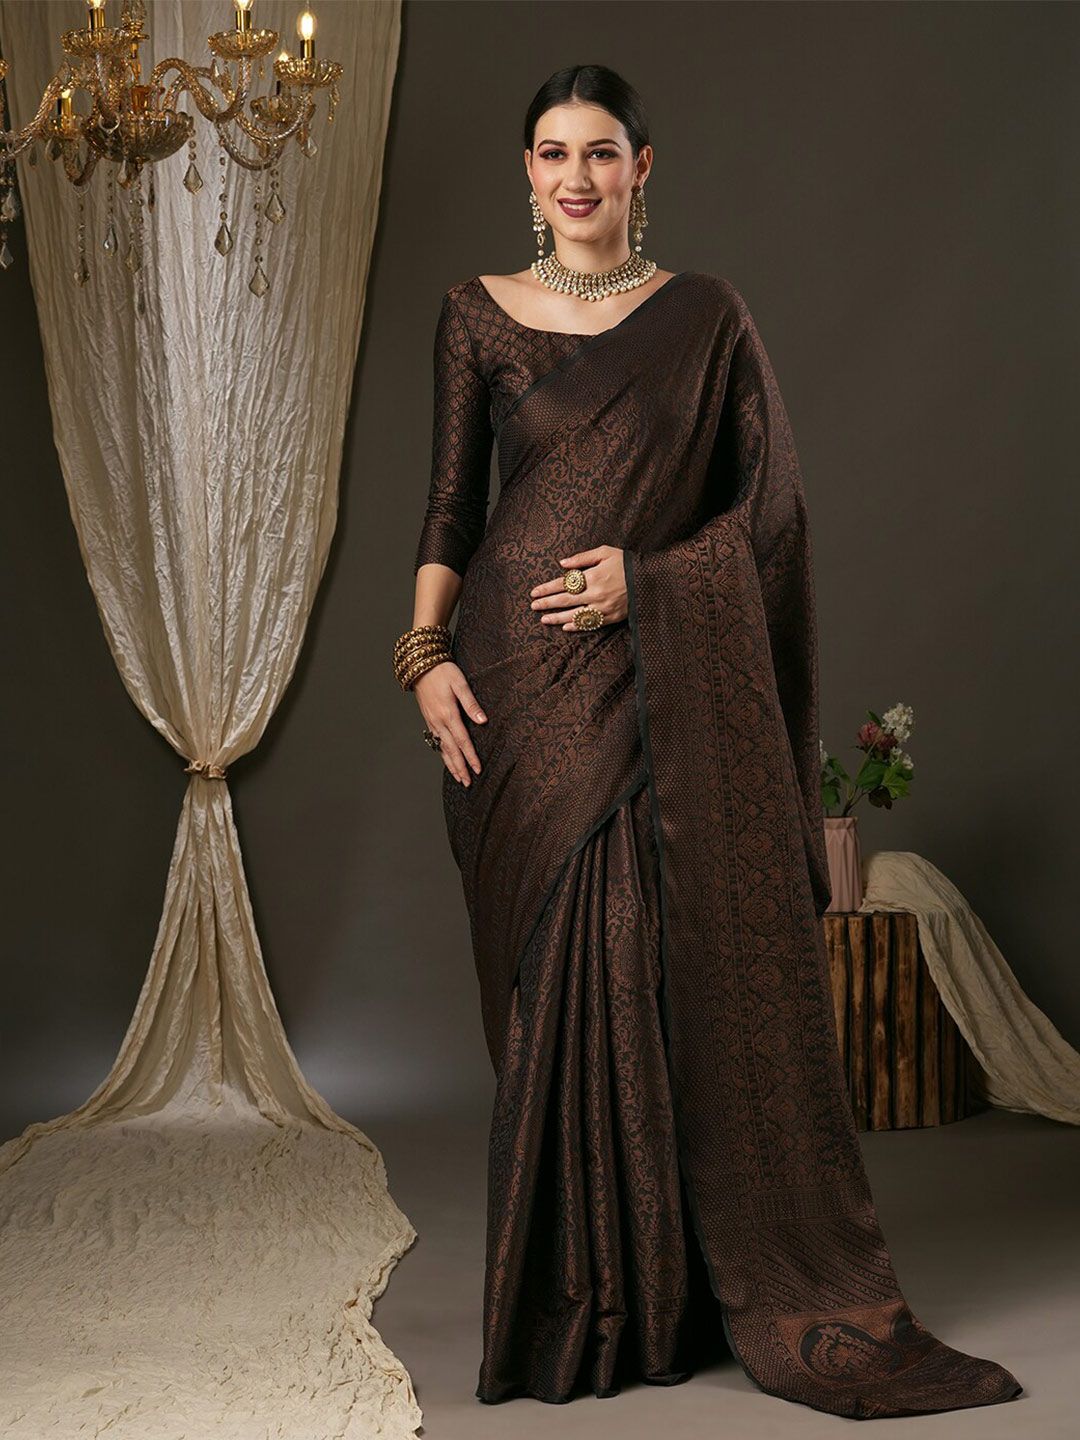 Saree mall Black & Gold-Toned Woven Design Zari Silk Blend Banarasi Sarees Price in India